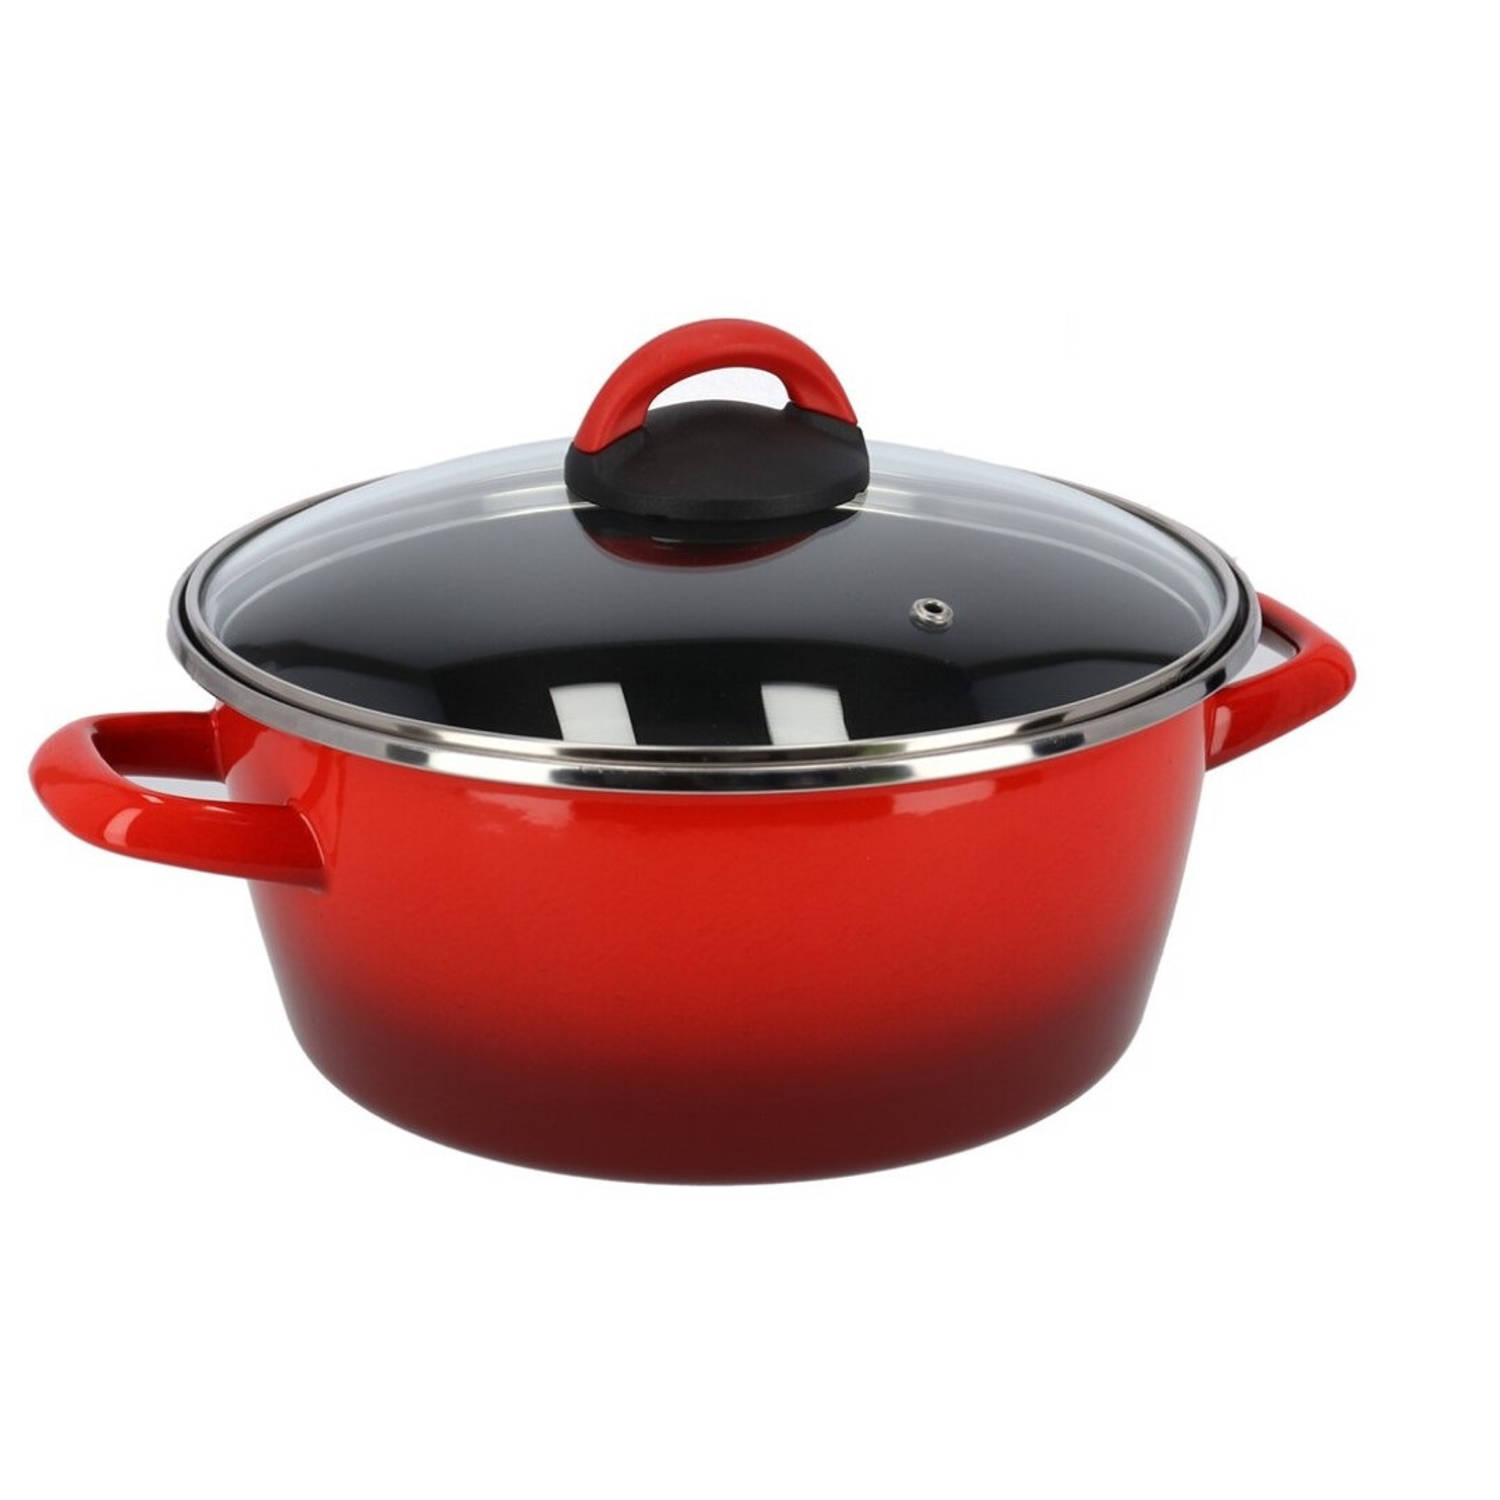 Rvs rode kookpan/pan met glazen deksel 24 cm 8 liter - Kookpannen